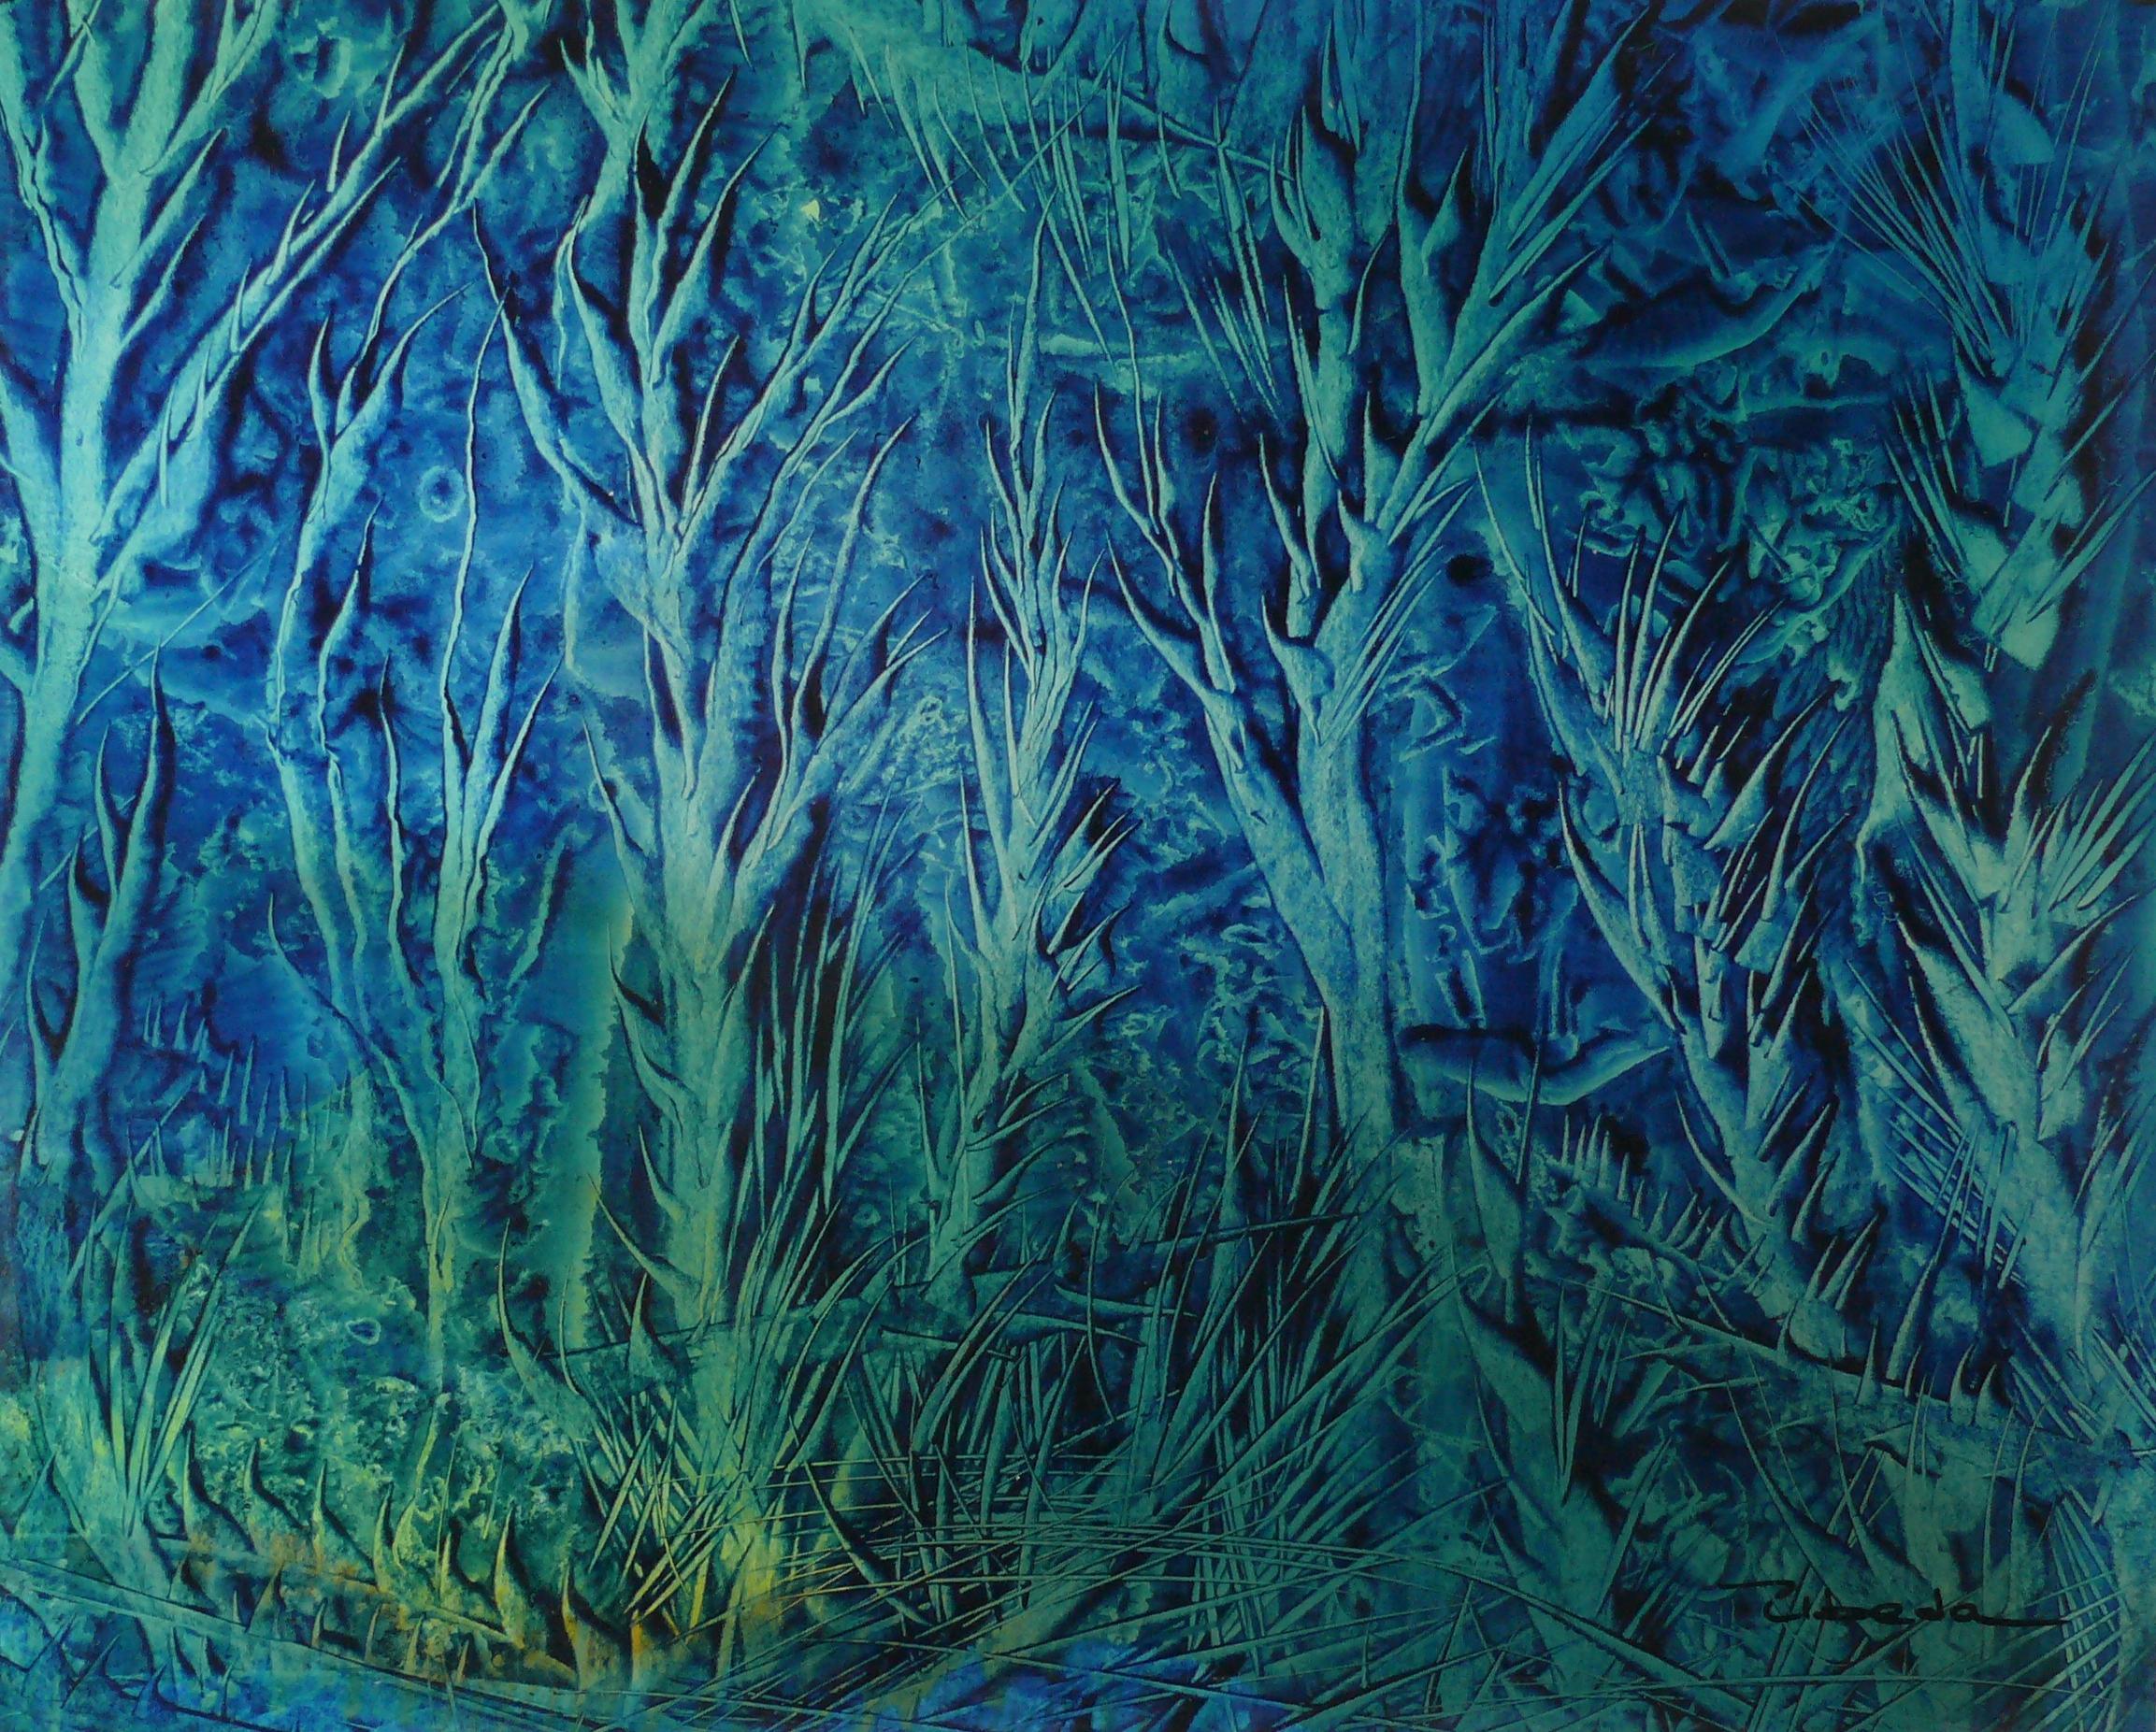 Serie Unter dem Meer, Nr. 10. Úbeda. Öl- Fantasie- unterwasserlandschaft in Blau und Grün. – Painting von Ángel Luis Úbeda